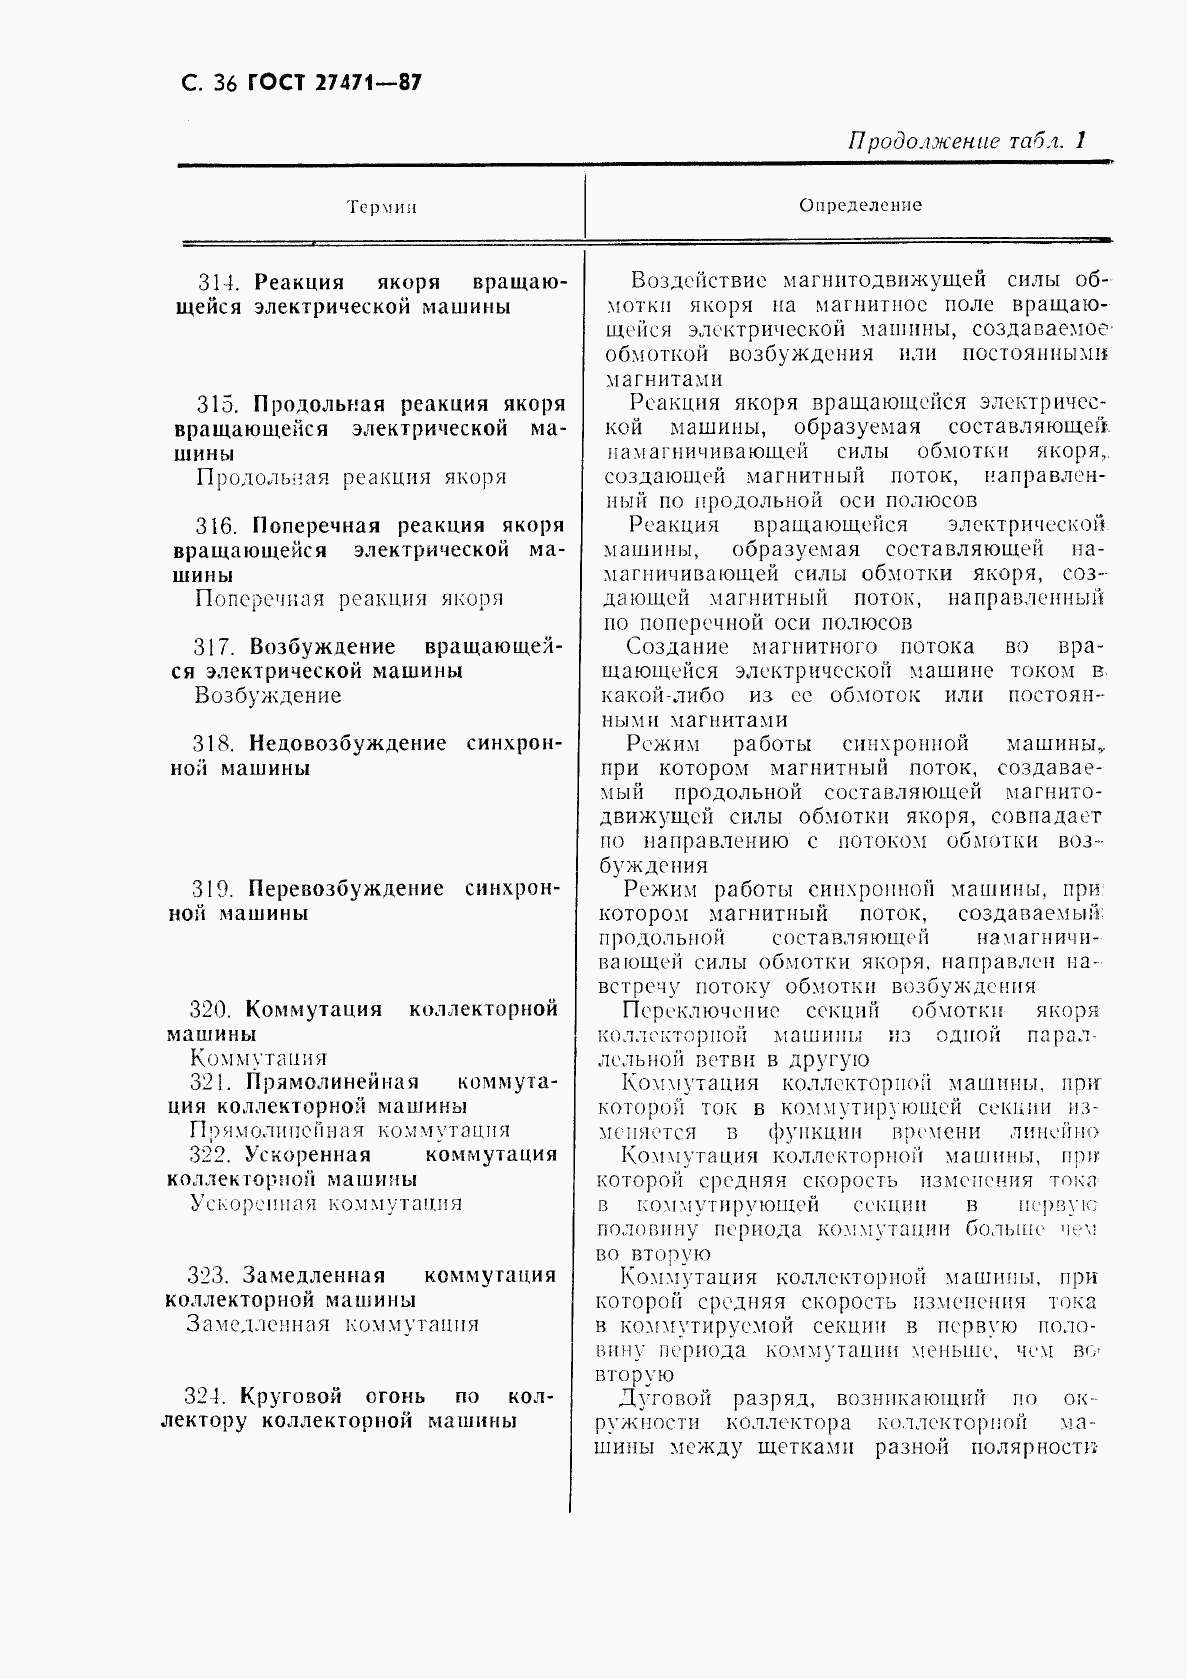 ГОСТ 27471-87, страница 37